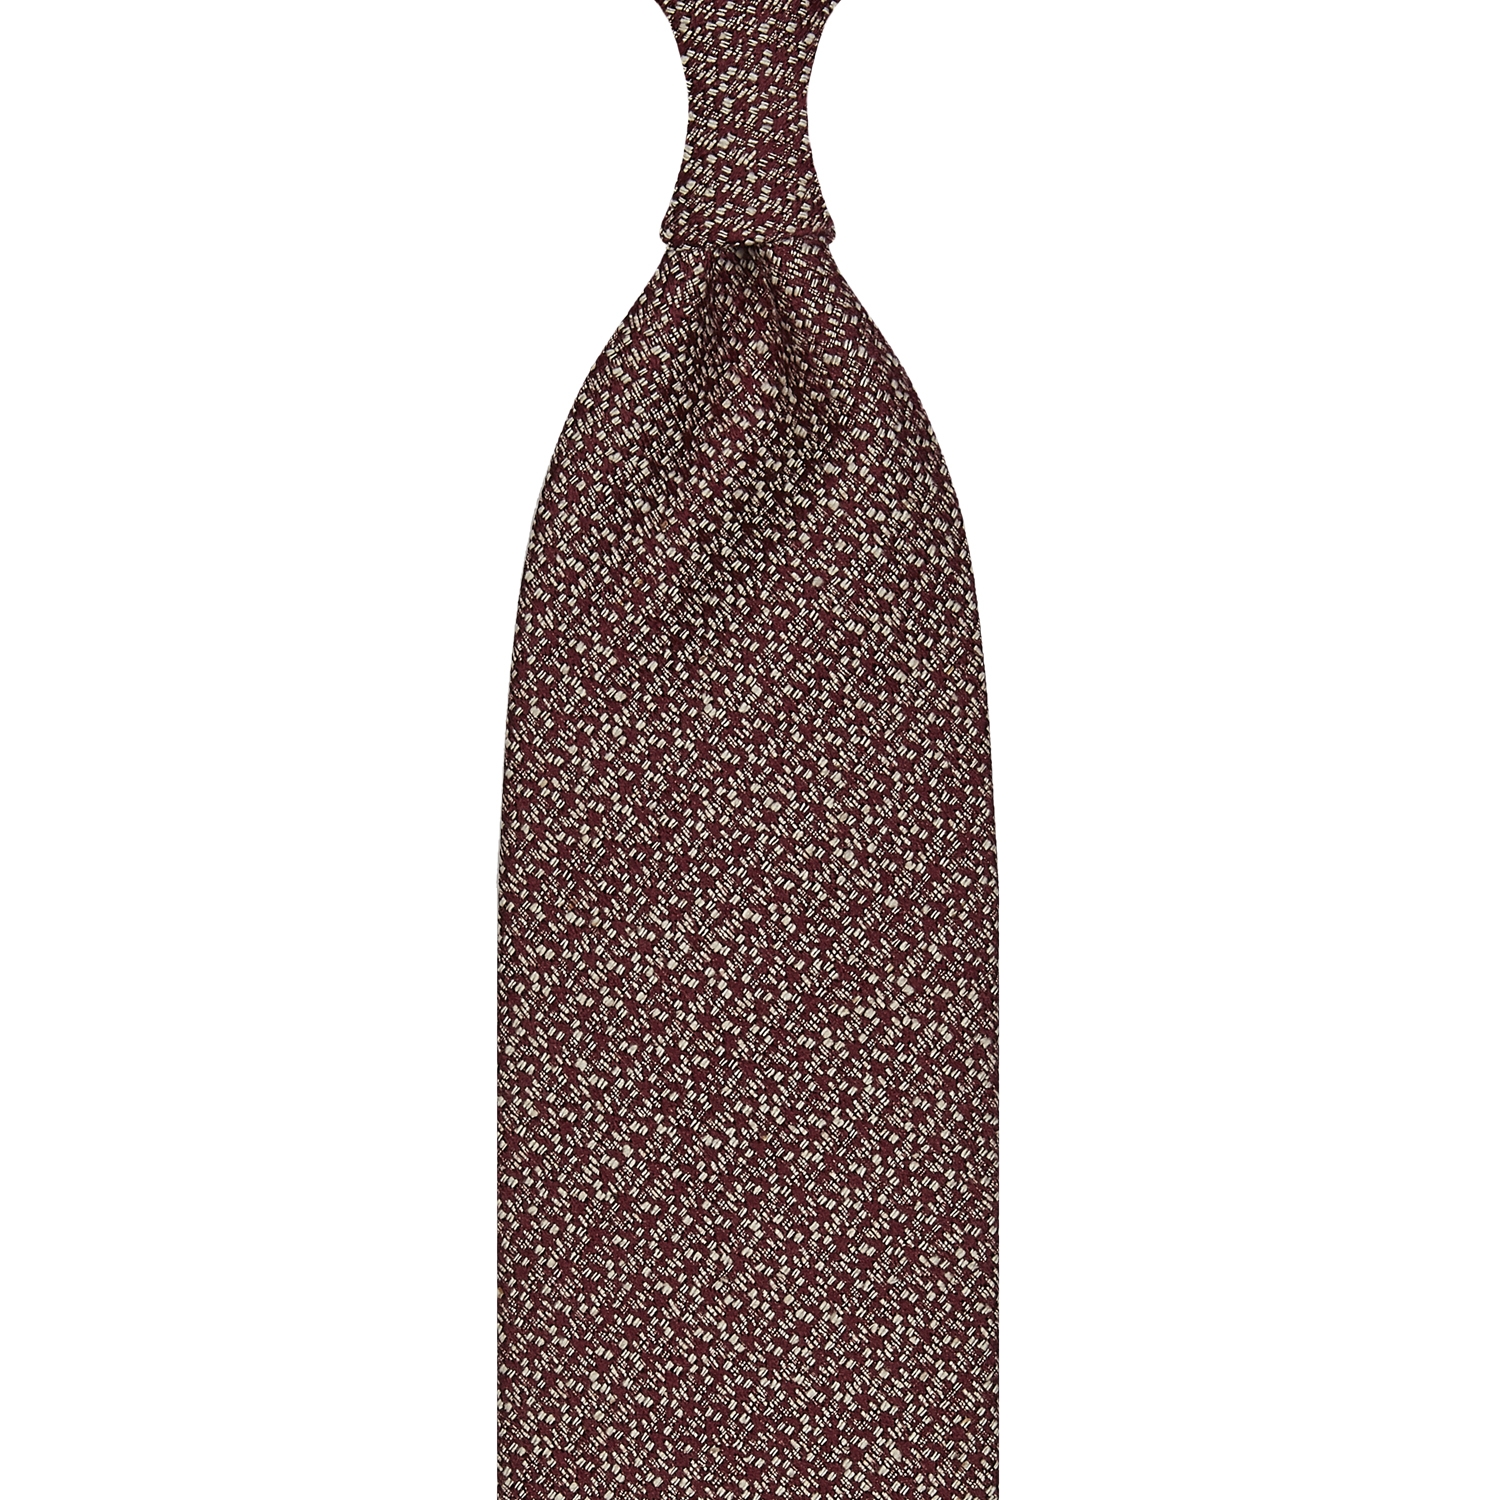 cravate classique non doublée en soie Tussah - bordeaux / blanc moucheté